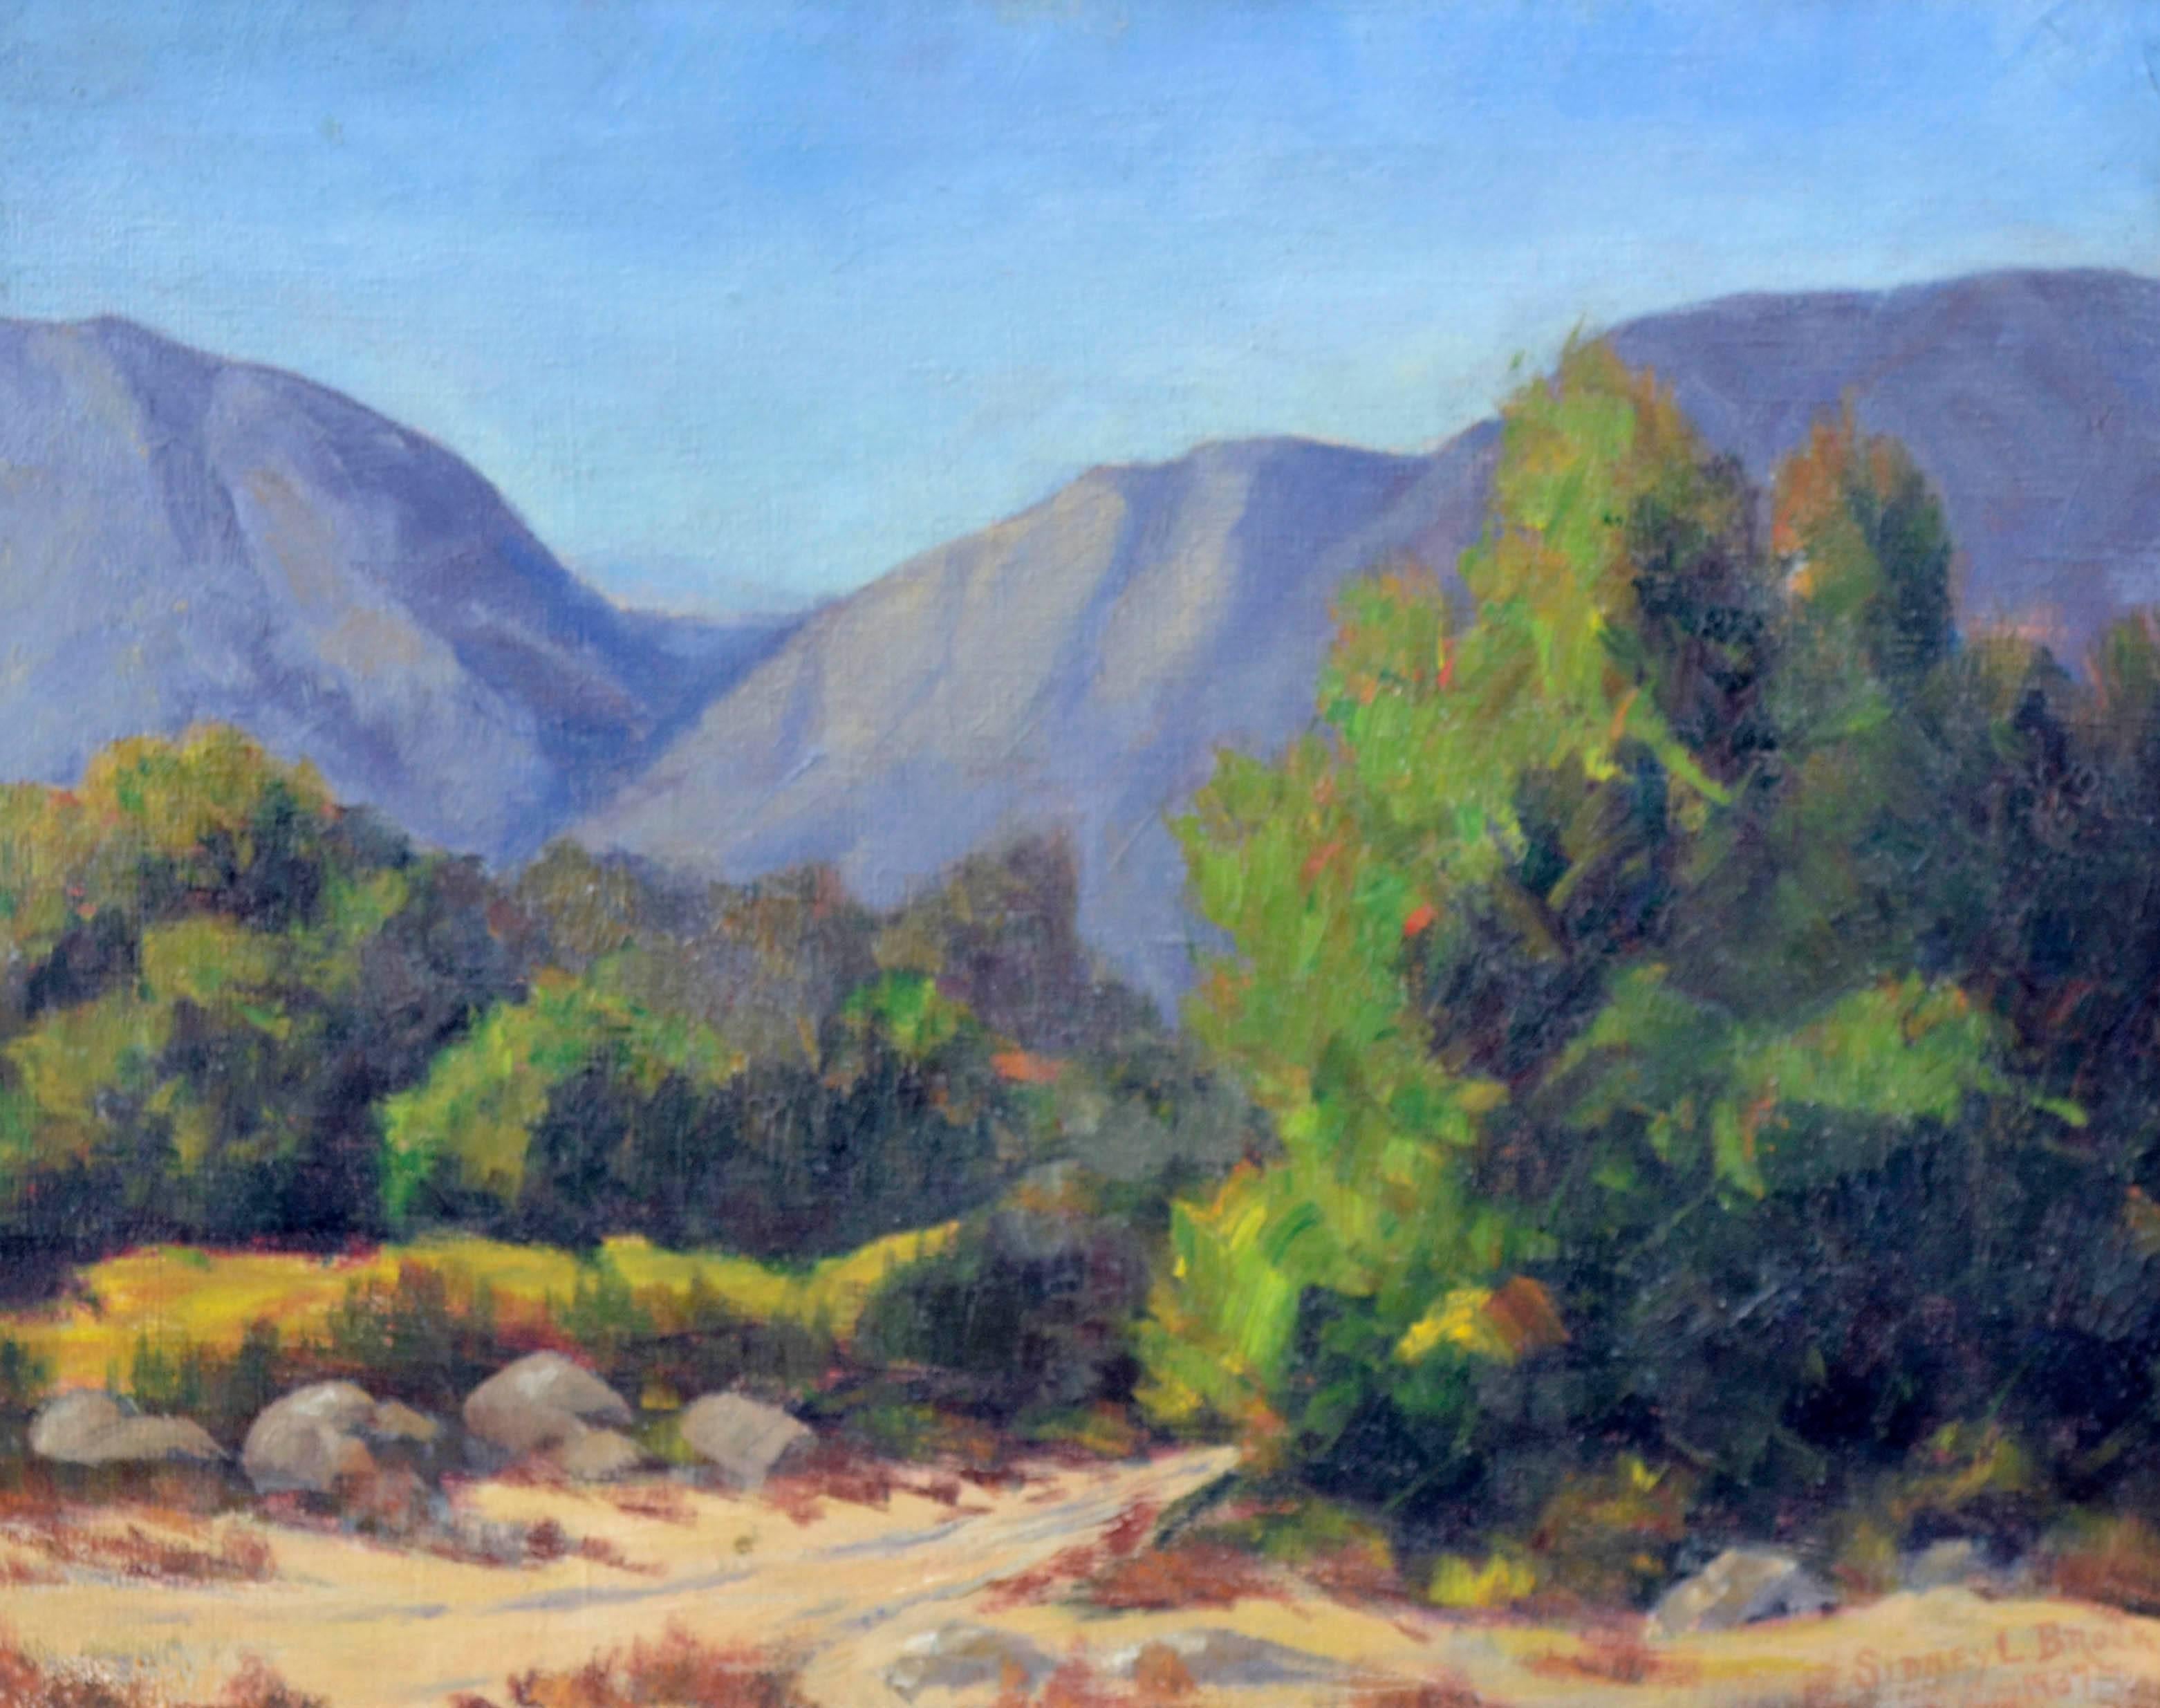 California Mountain Trail-Landschaft aus den 1930er Jahren  – Painting von Sidney L. Brock